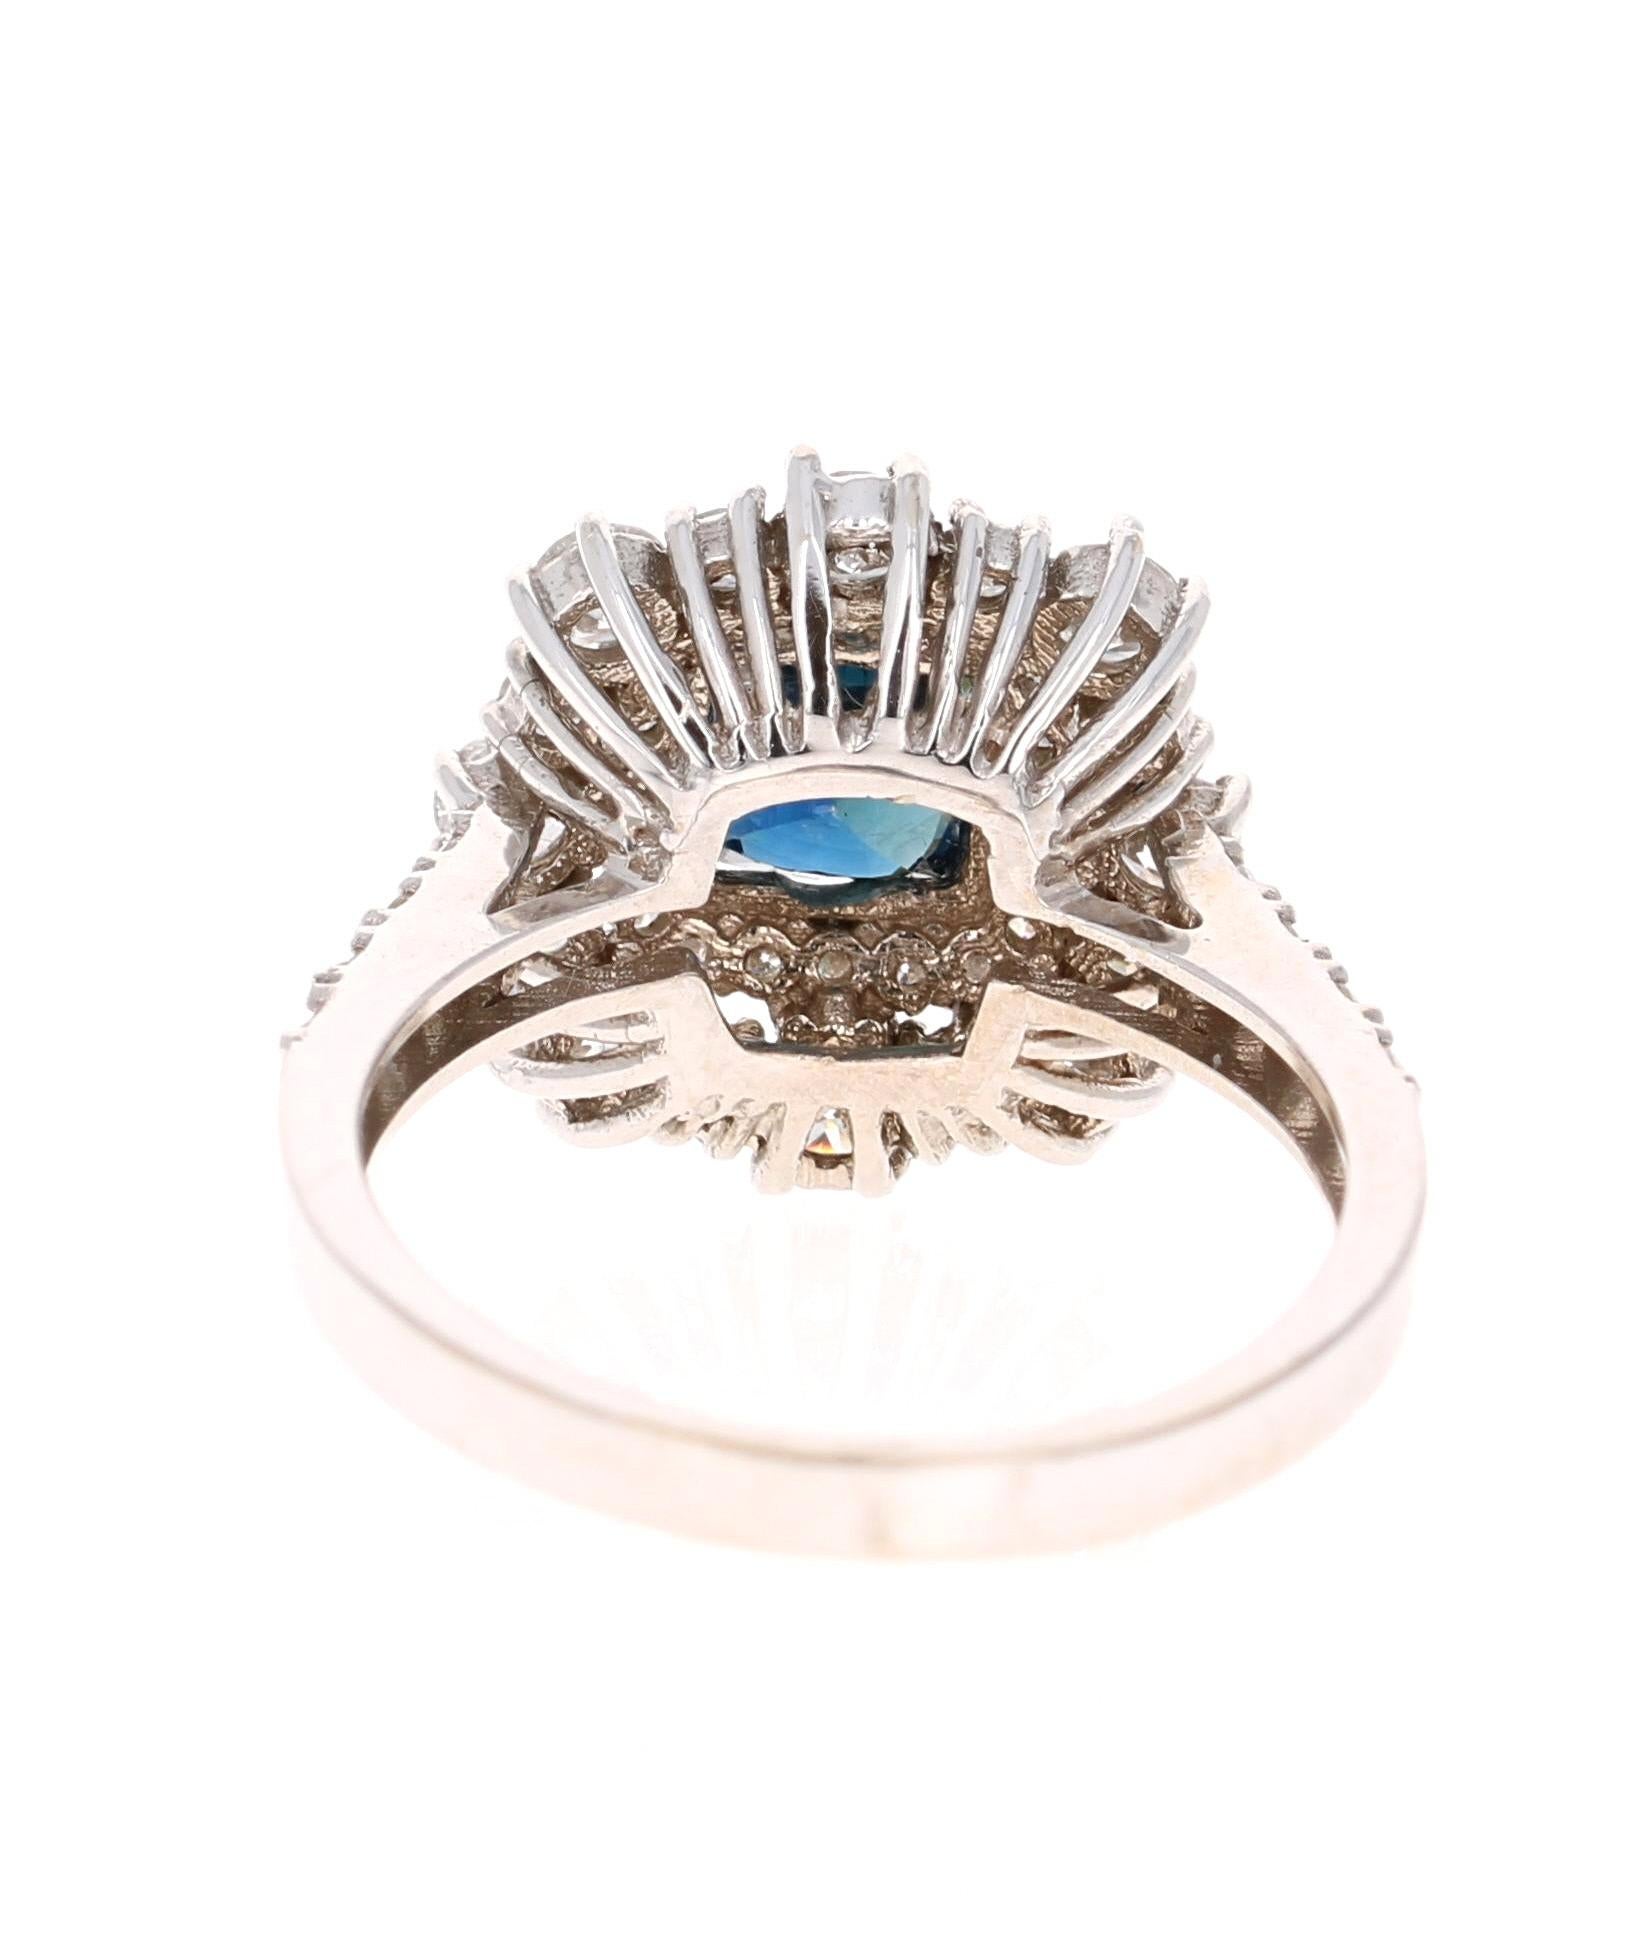 Cushion Cut 2.93 Carat GIA Certified Sapphire Diamond 18 Karat White Gold Engagement Ring